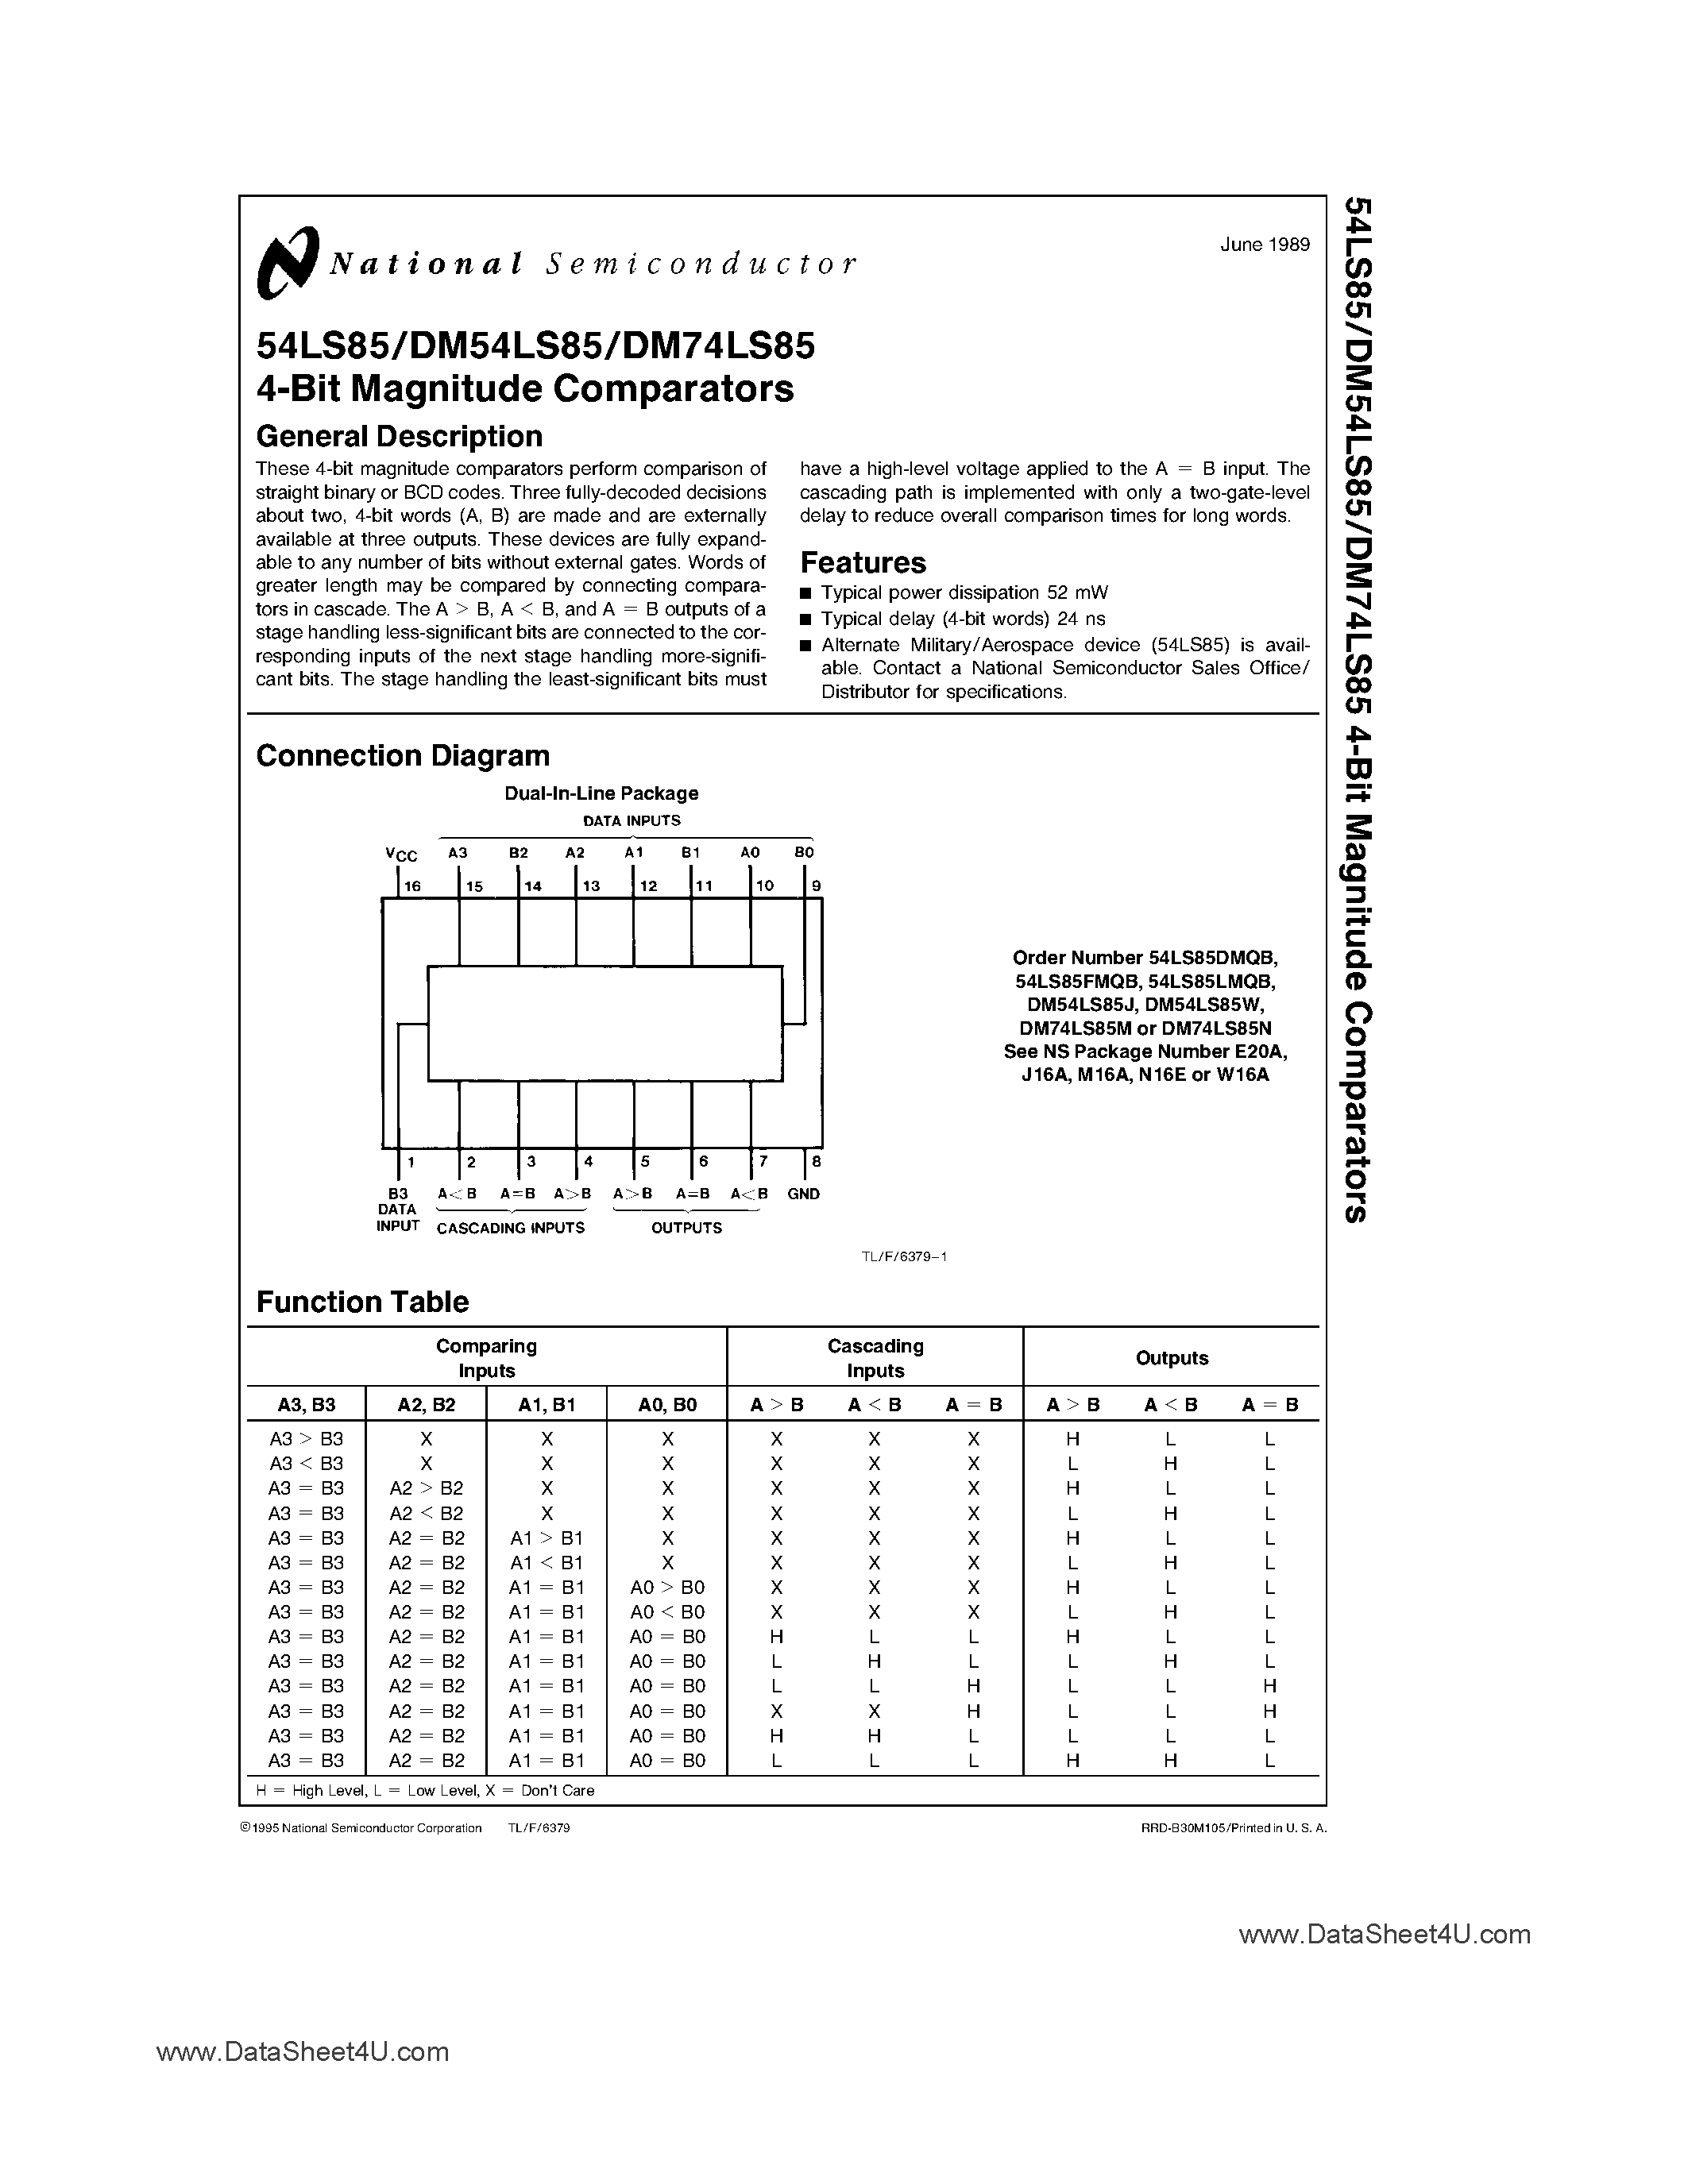 Даташит DM74LS85 - 4-Bit Magnitude Comparators страница 1